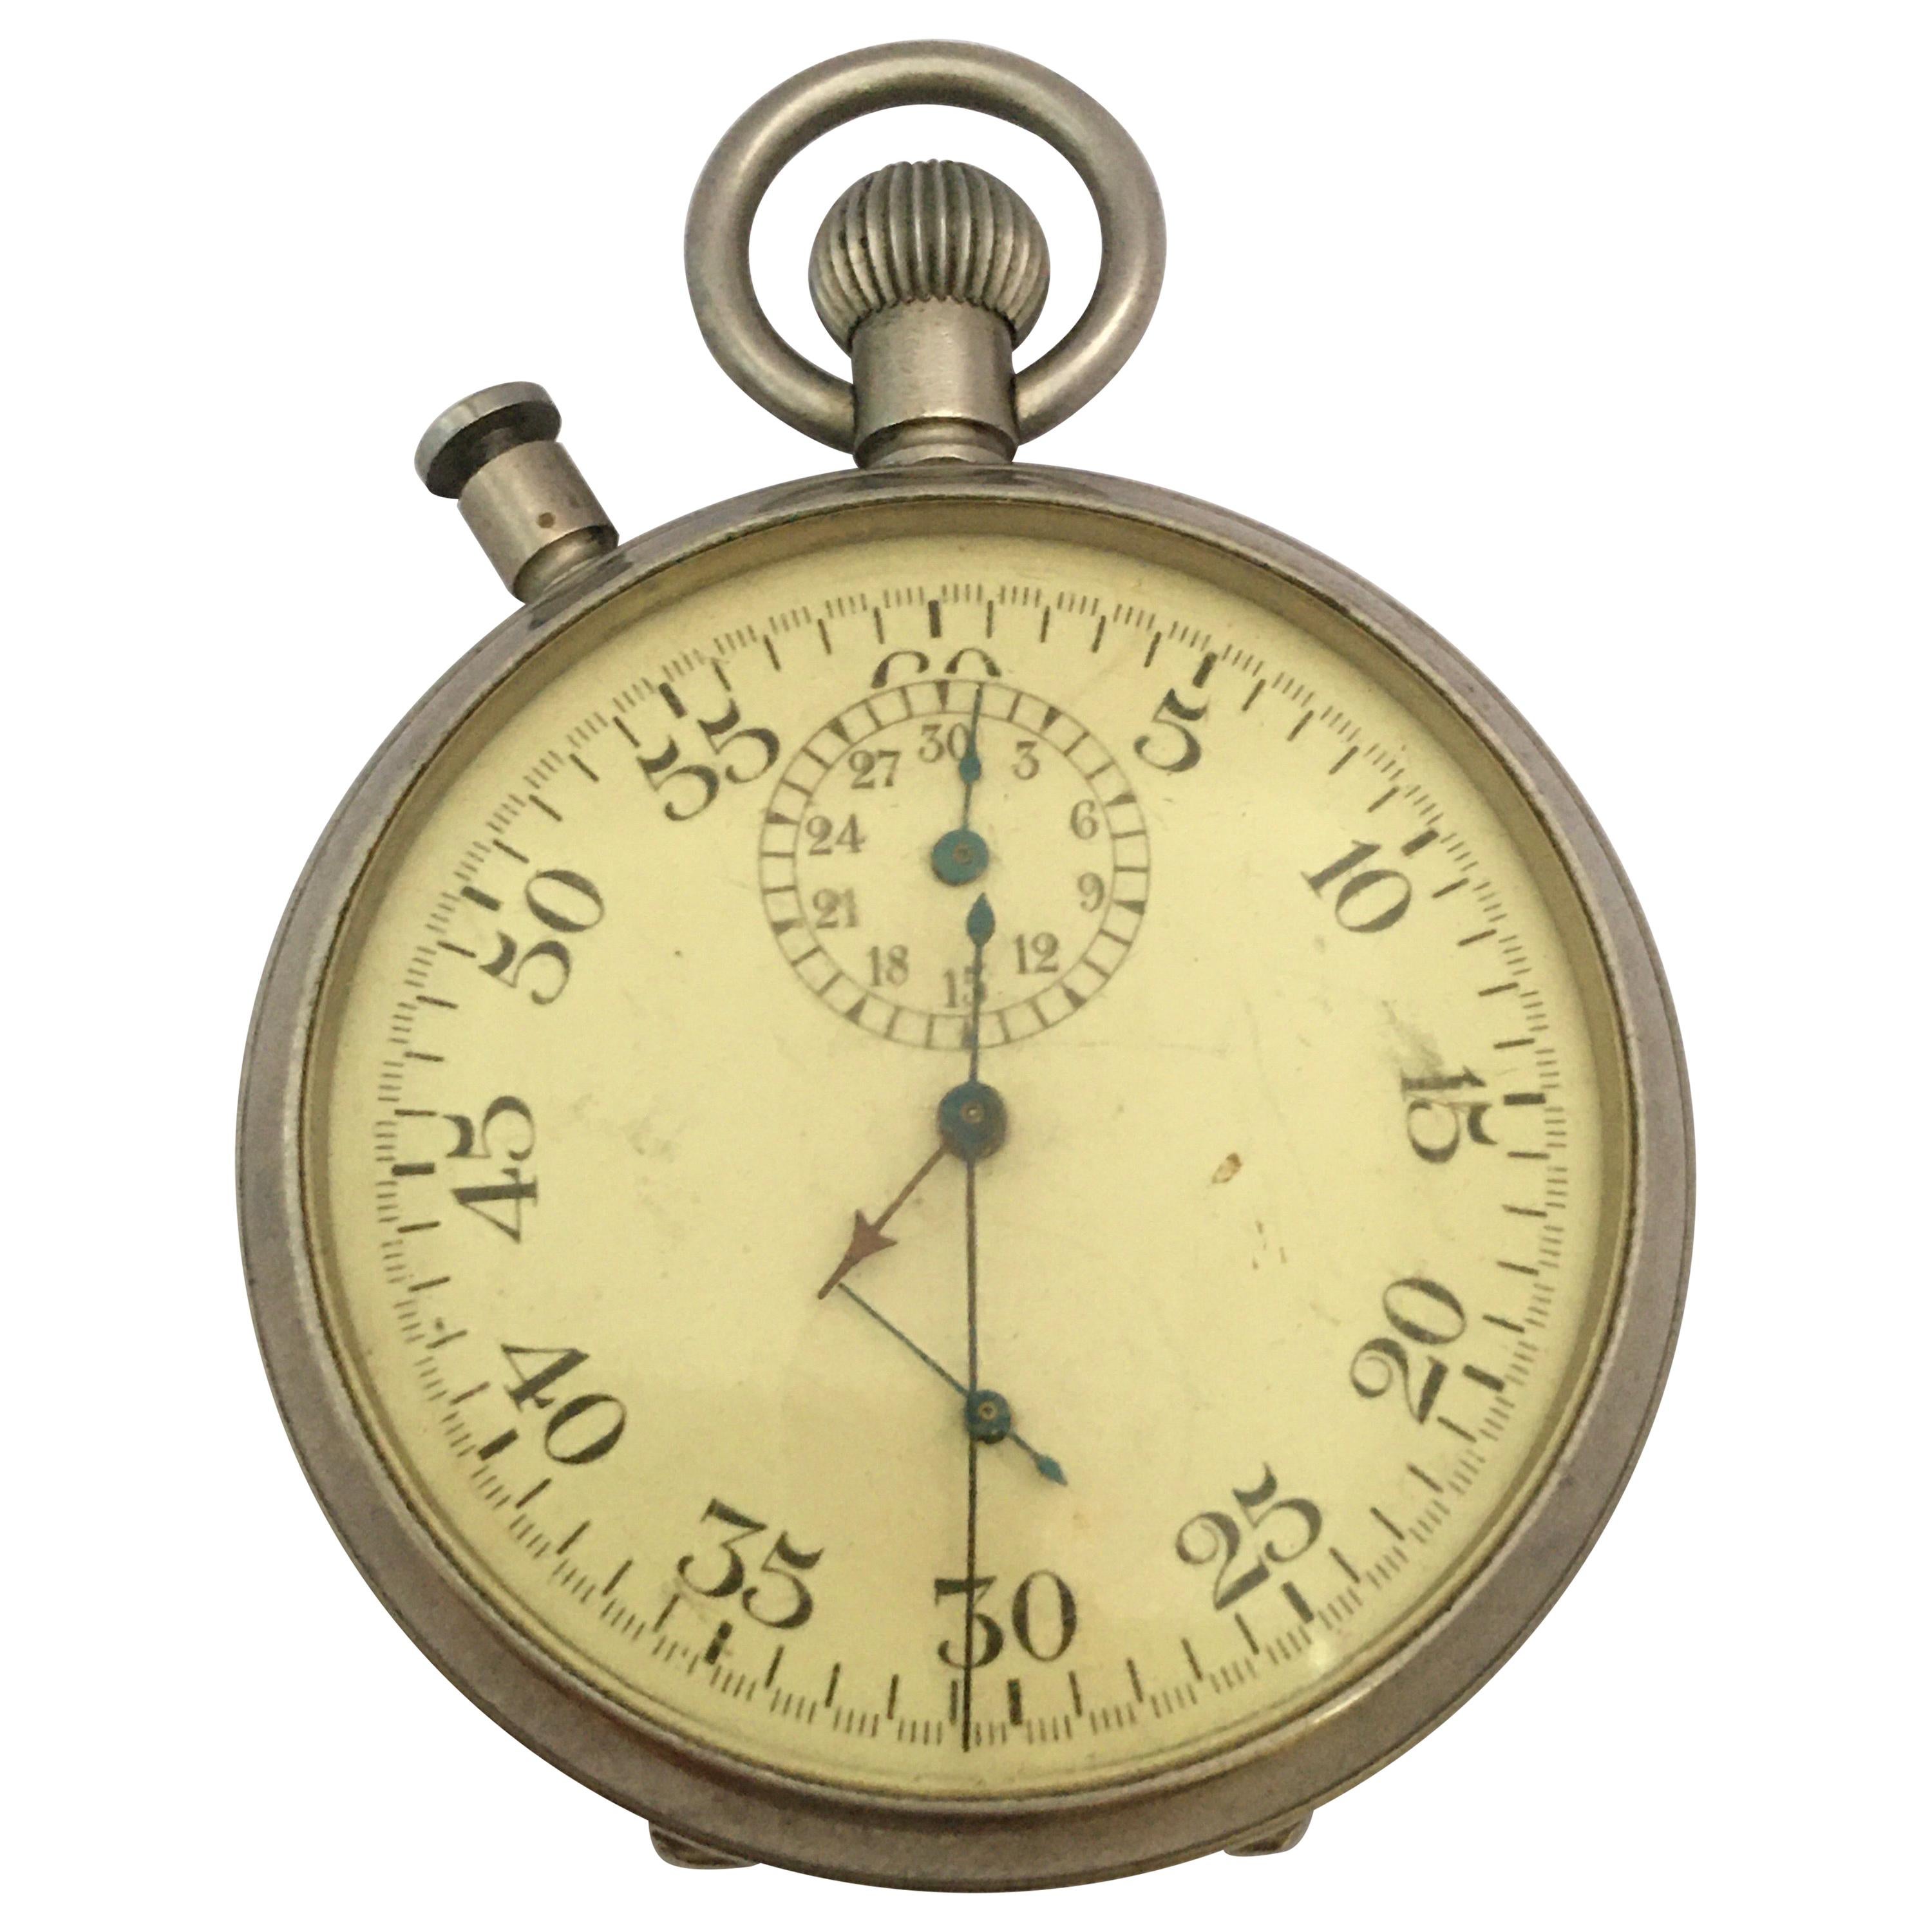 Rare chronomètre chronographe militaire des années 1940 avec rattrapante PATT. 4 No. 11643